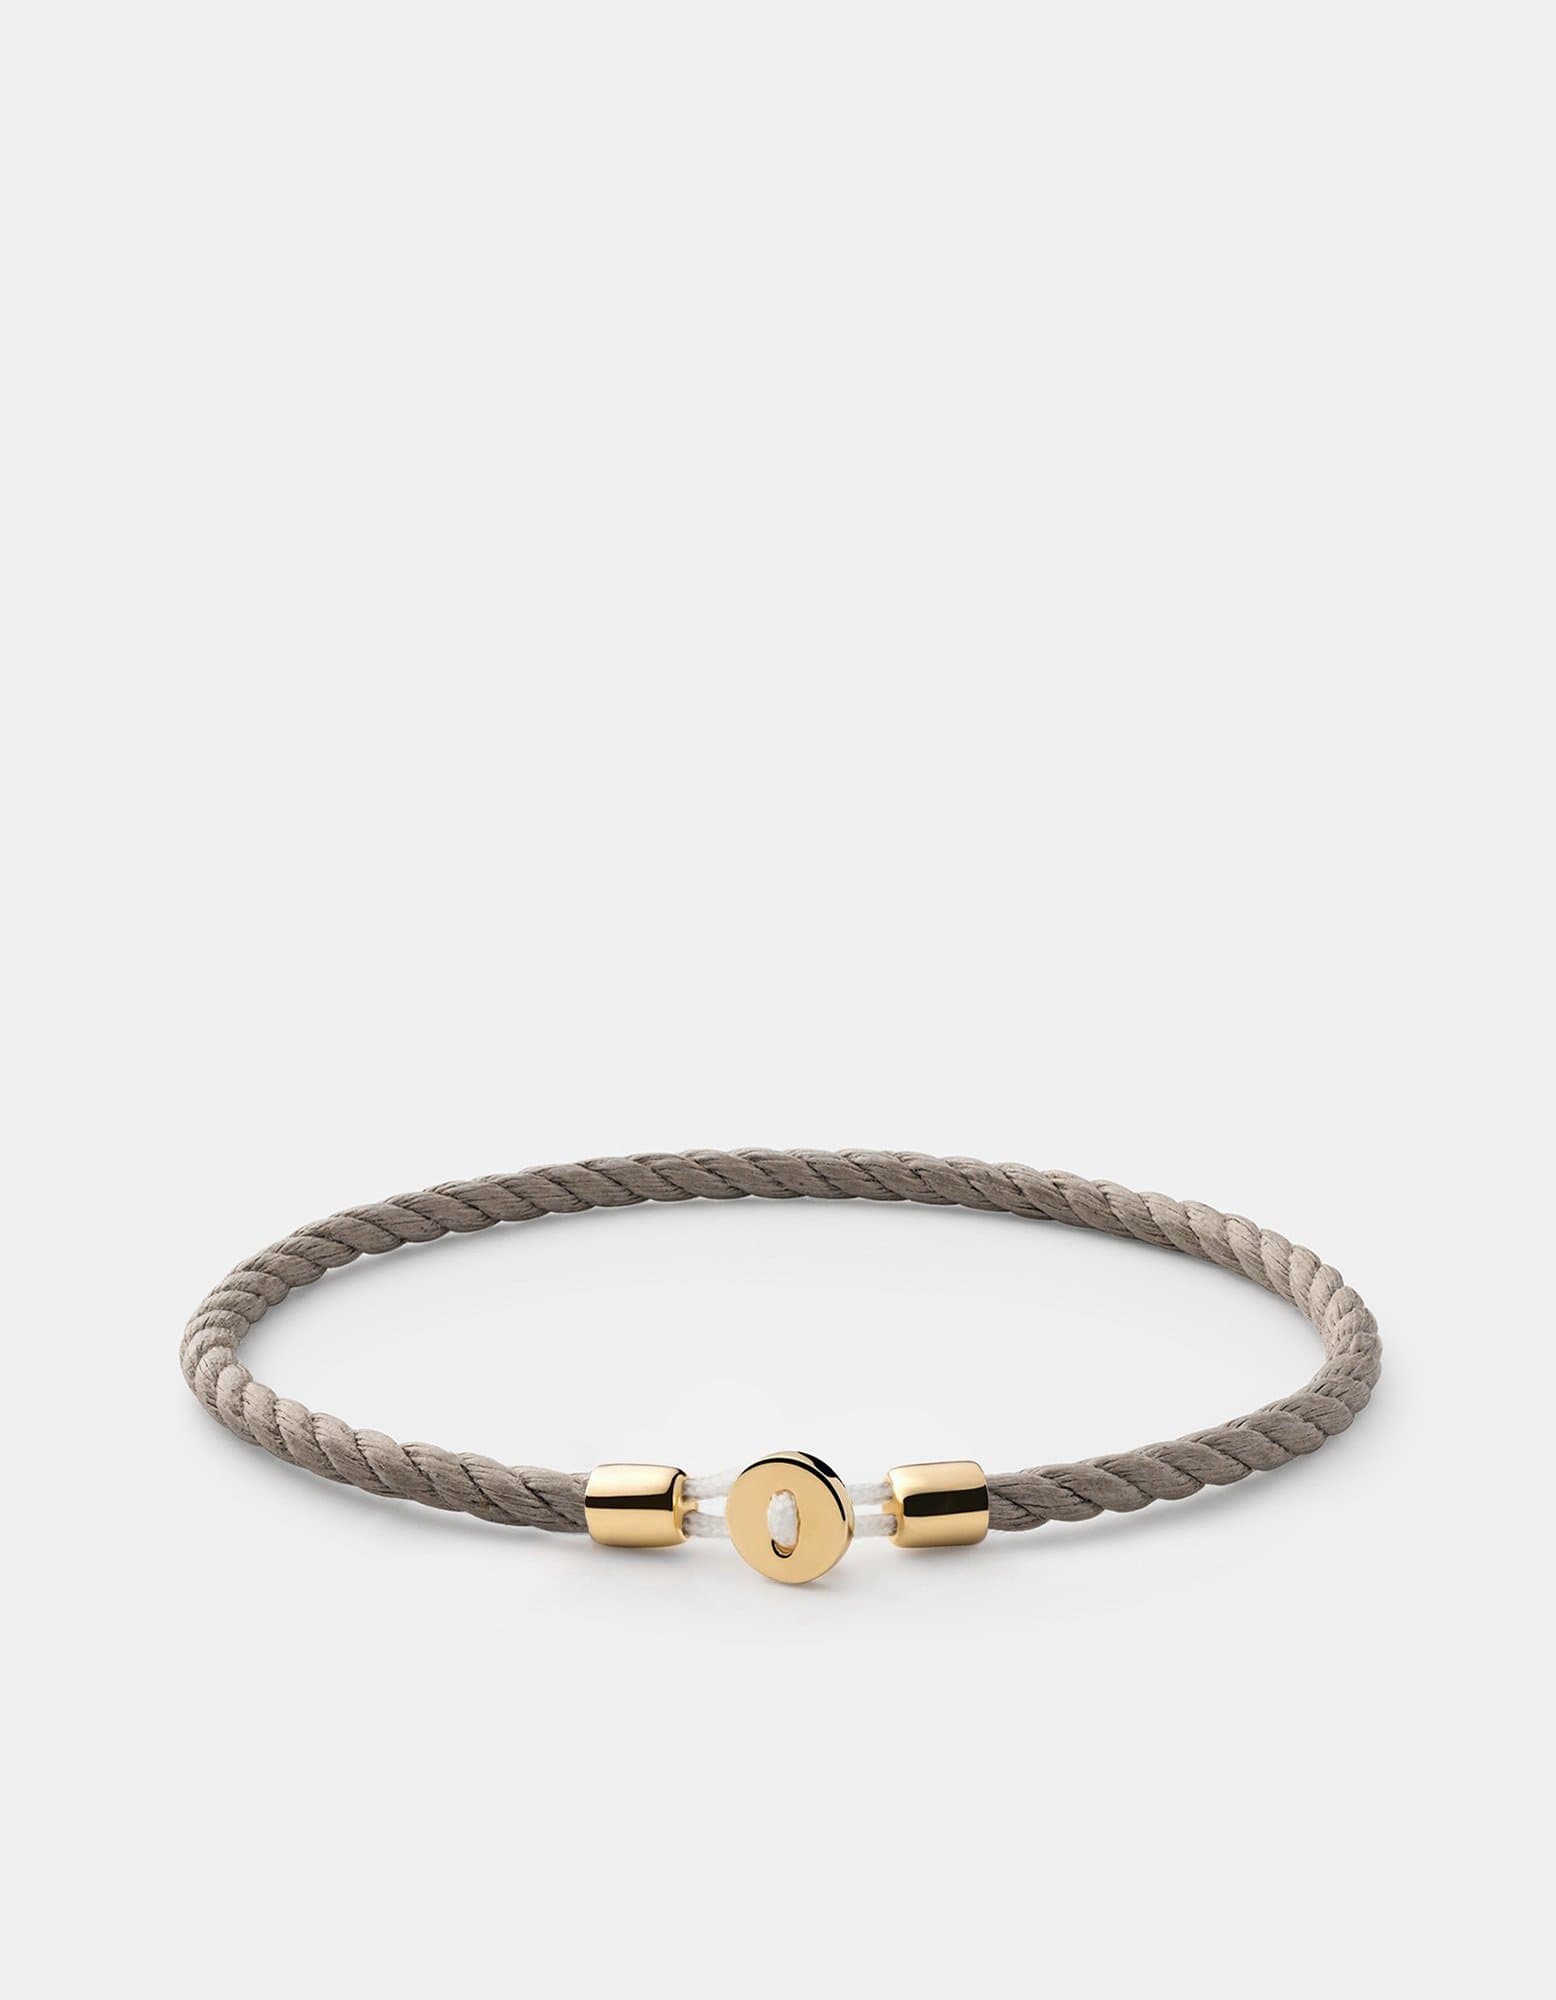 Nexus Cotton Rope Bracelet, Gold Vermeil | Women's Bracelets | Miansai